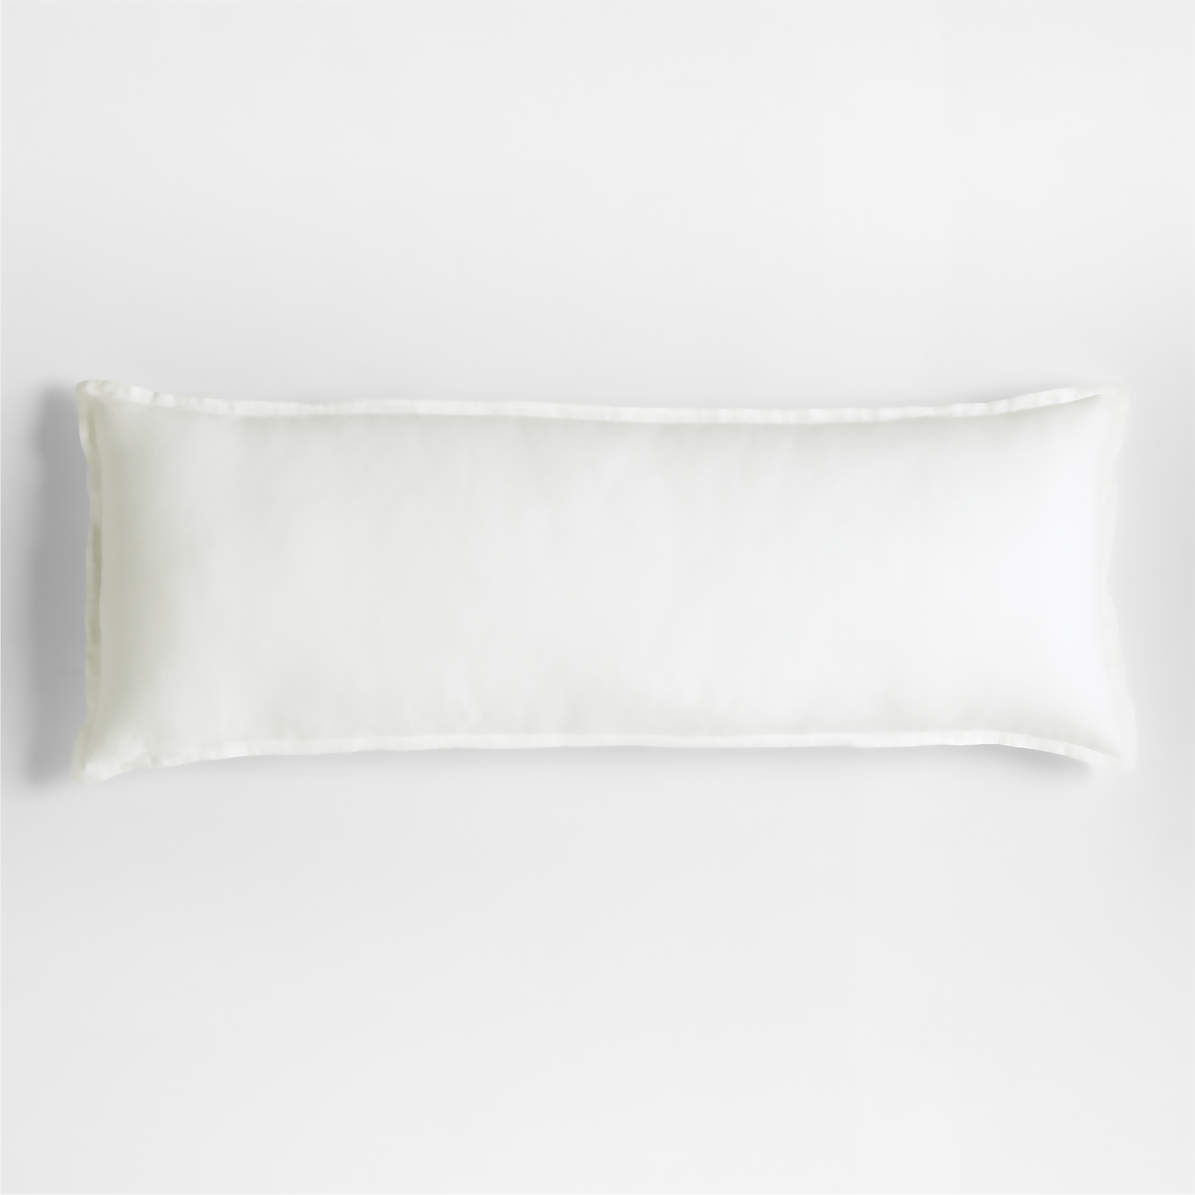 The Linen Body Pillow 22x54